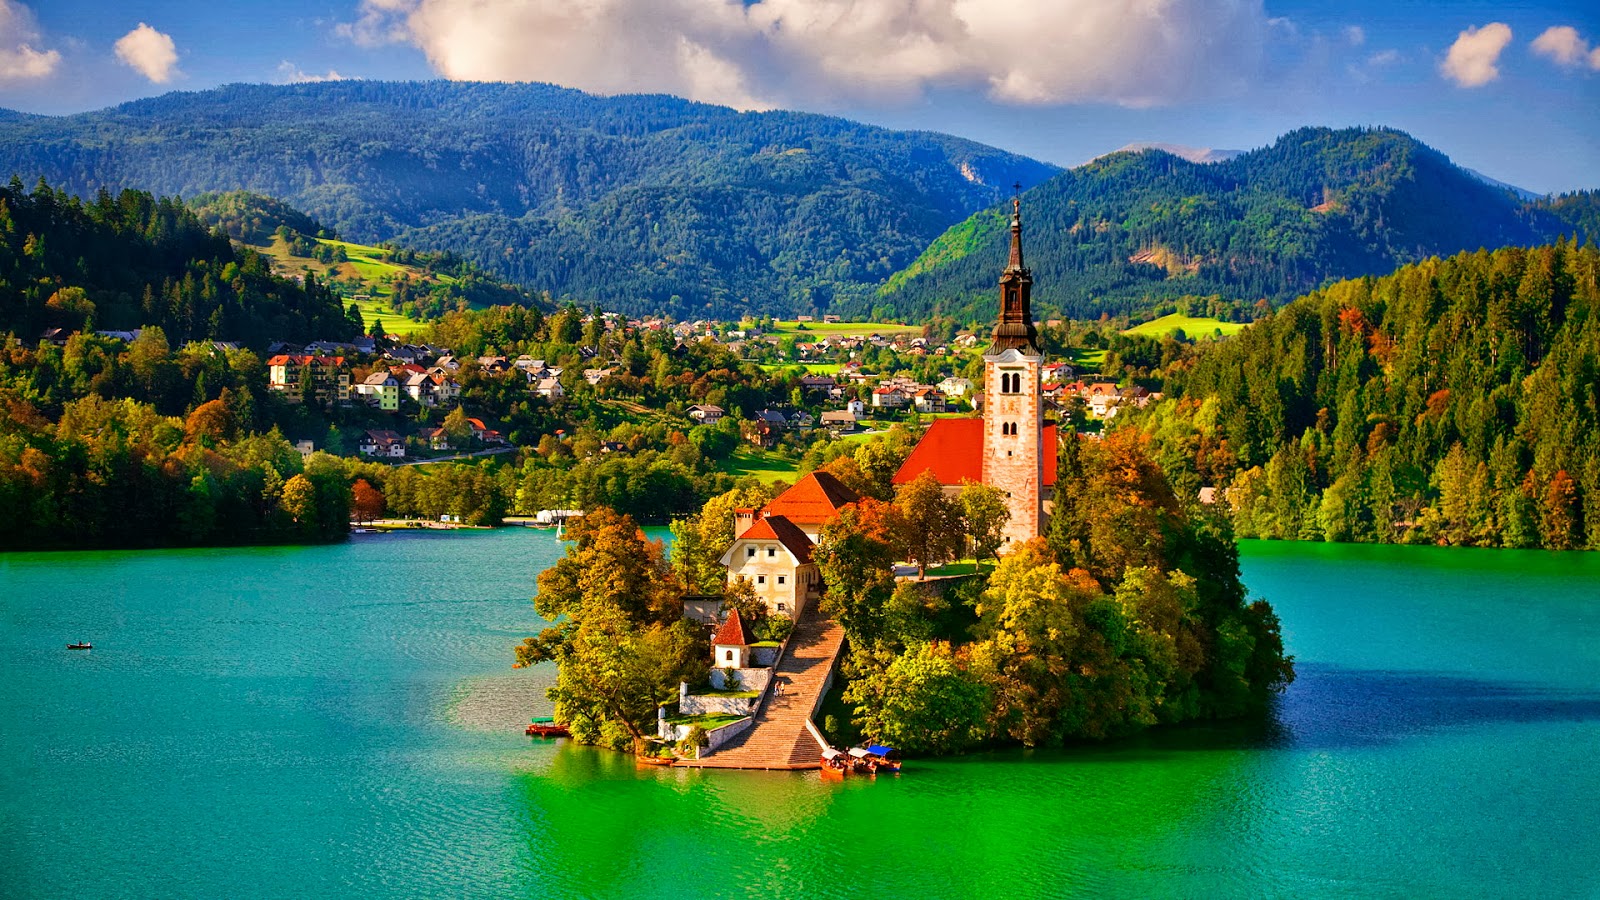 Hồ Bled, Slovenia​